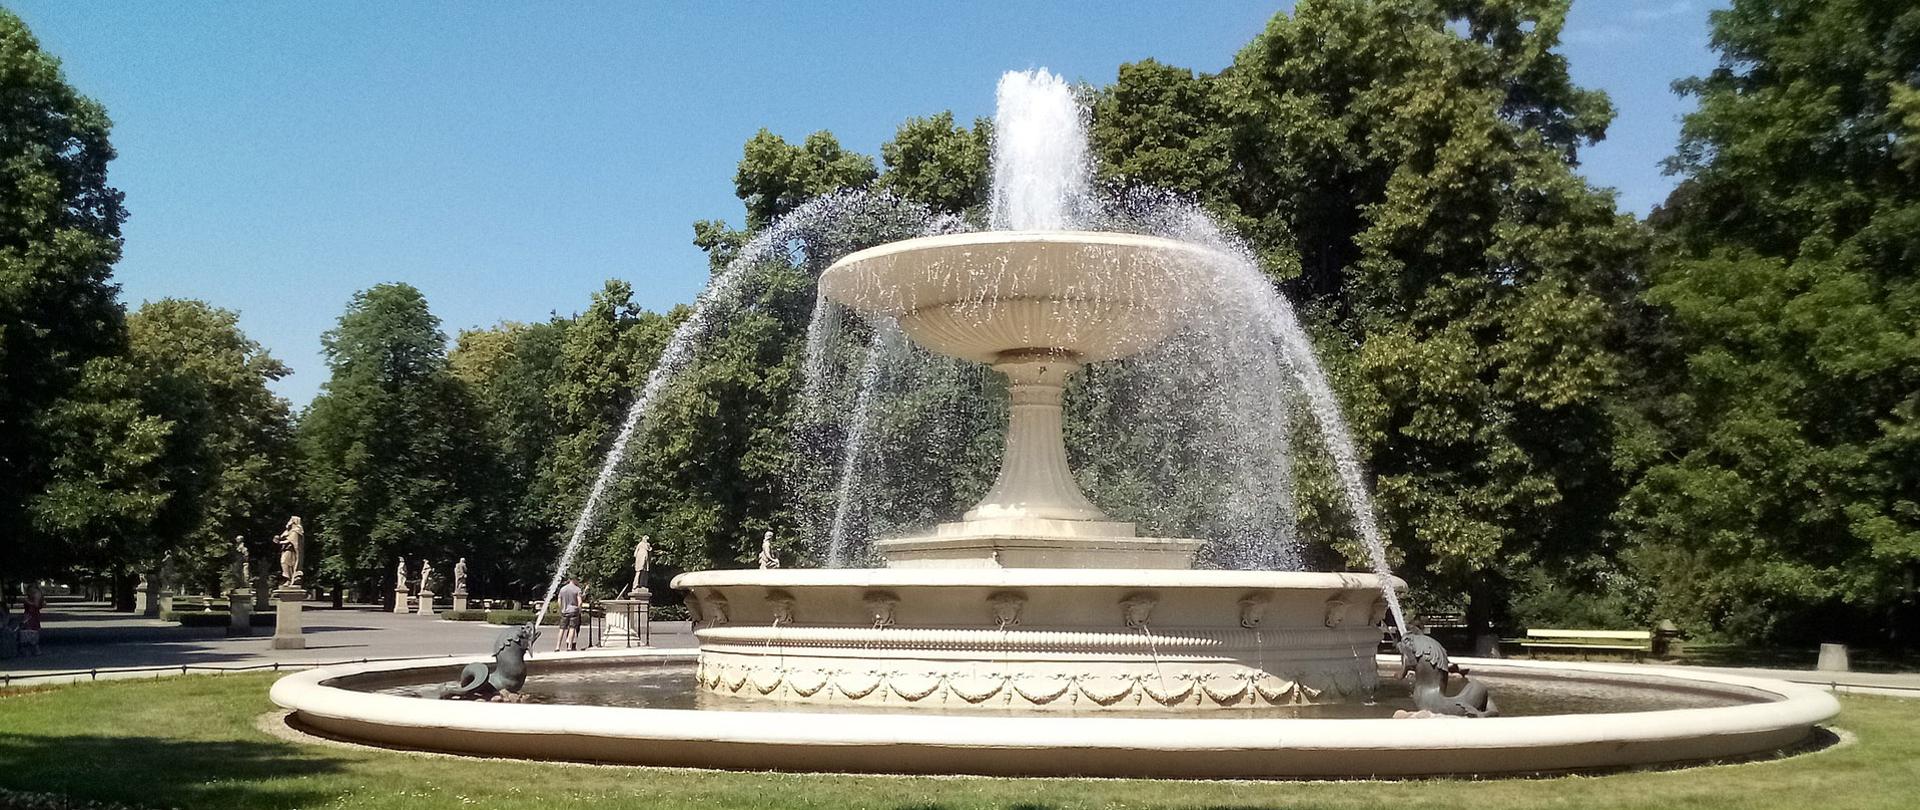 Zdjęcie dużej fontanny w parku.